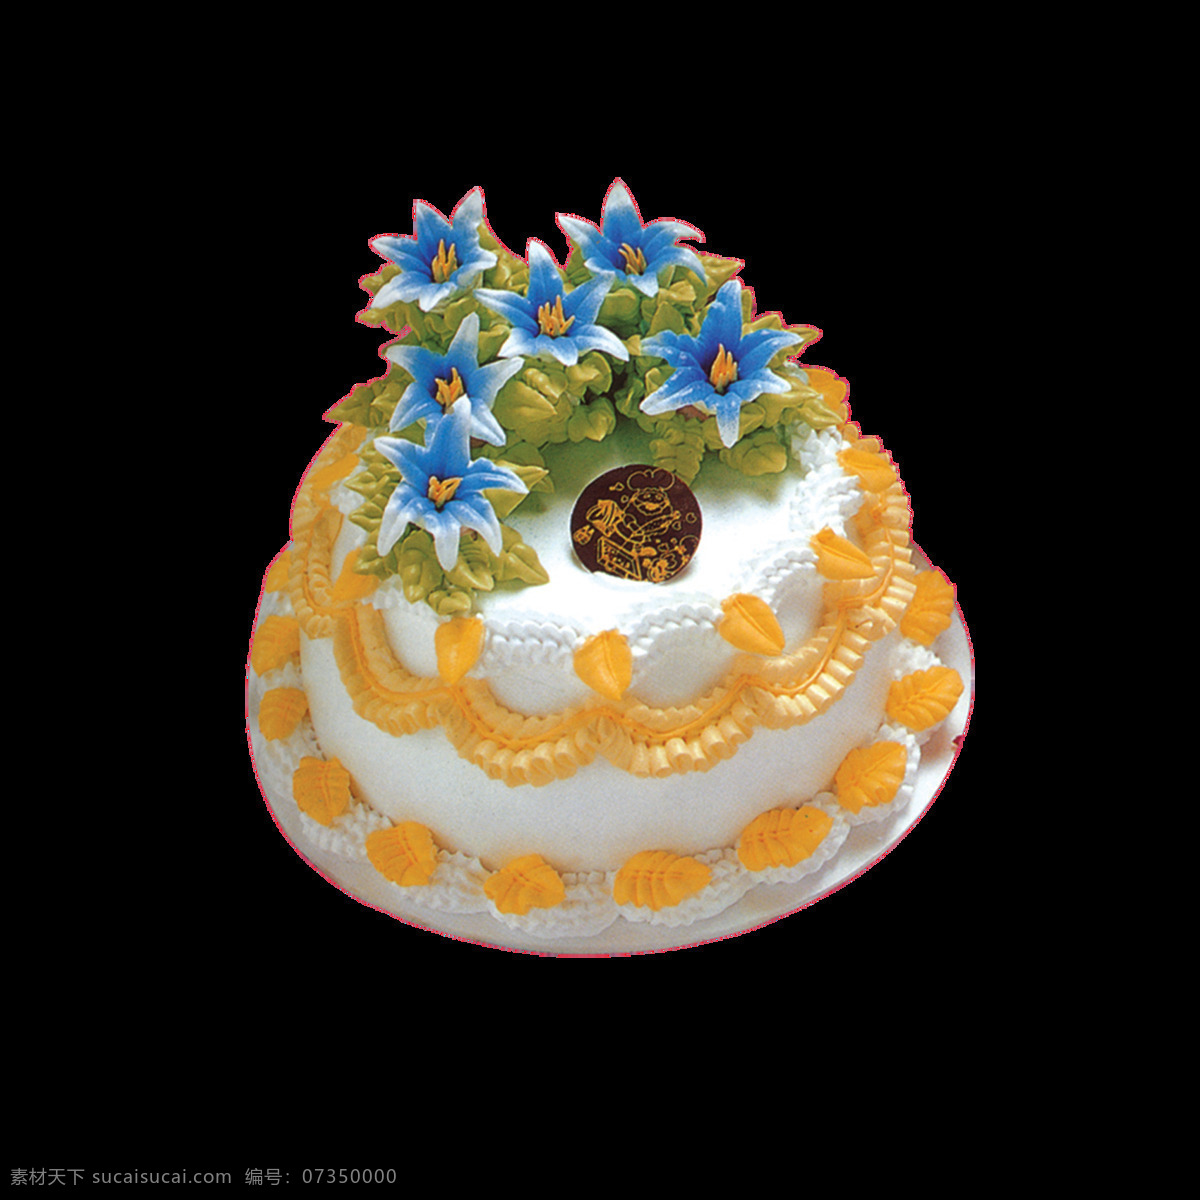 黄色 花朵 双层 蛋糕 百合蛋糕 蛋糕模型 蛋糕图案设计 花朵蛋糕 黄色蛋糕 双层蛋糕